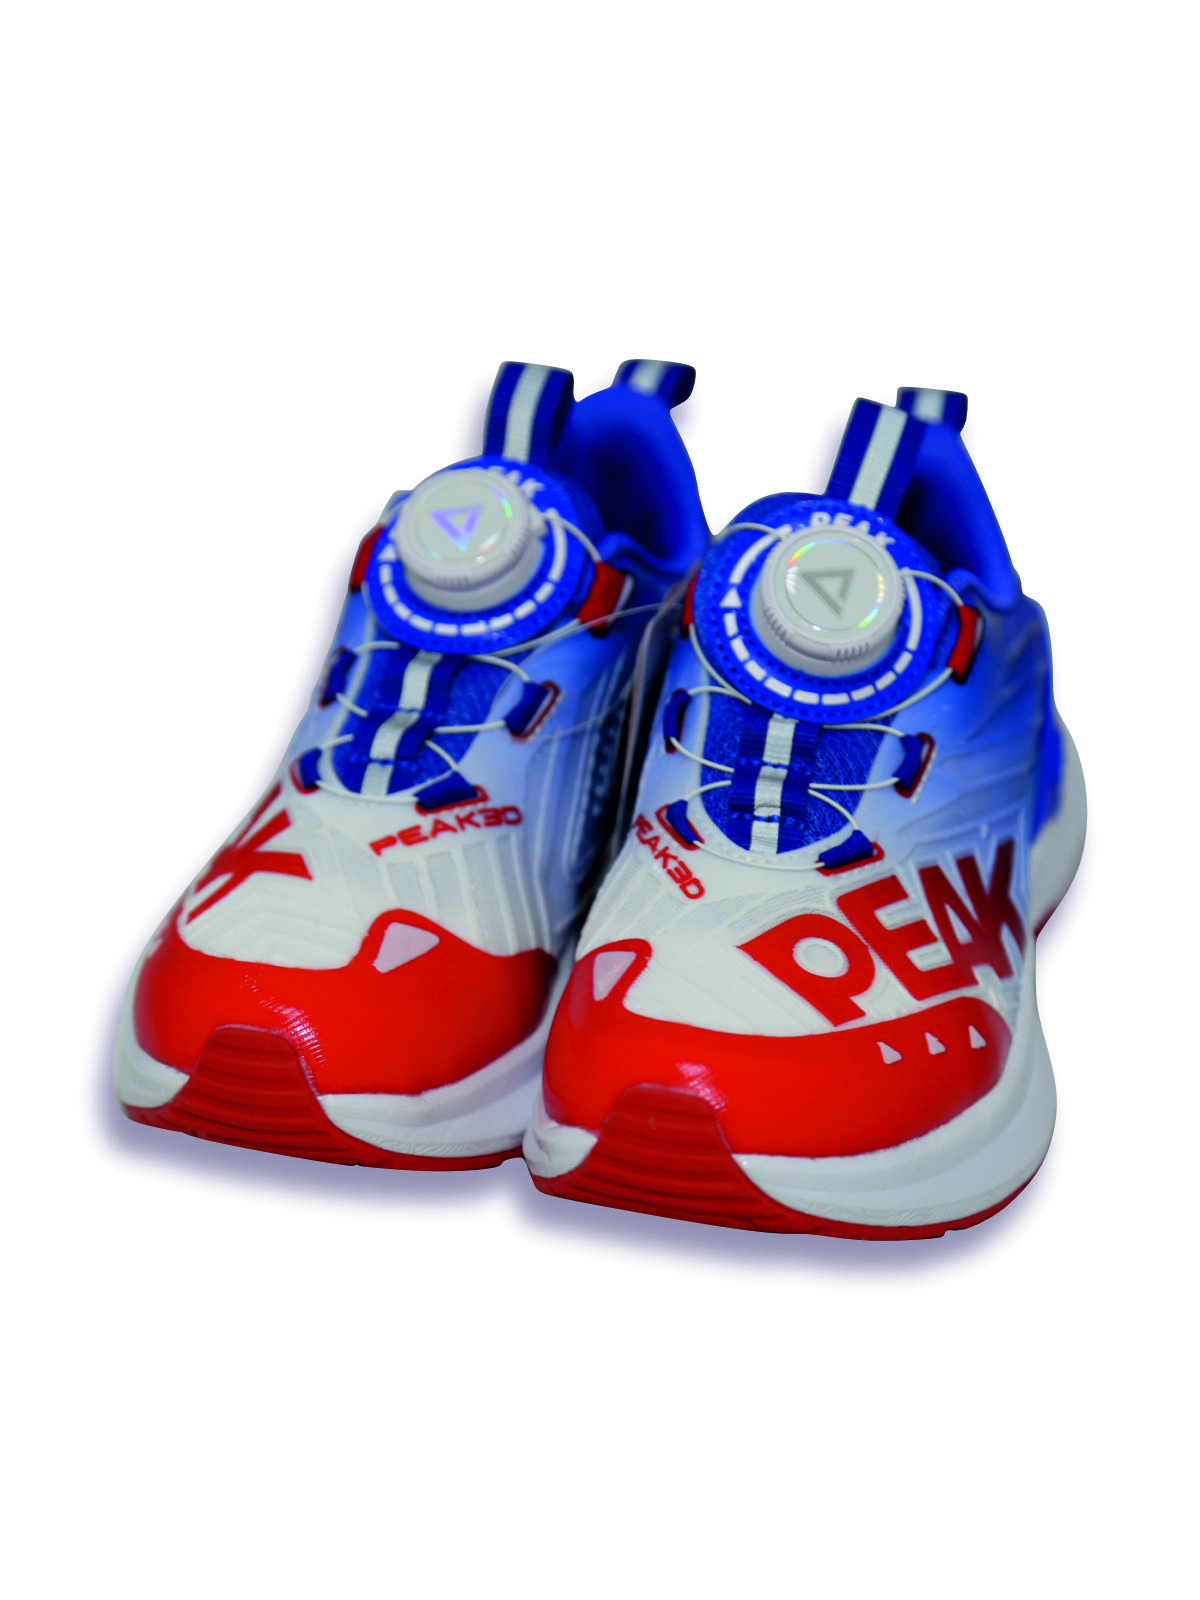 Кроссовки детские PEAK E23, красно-сине-белый, 35 кроссовки детские peak e23 фиолетово черно белый 35